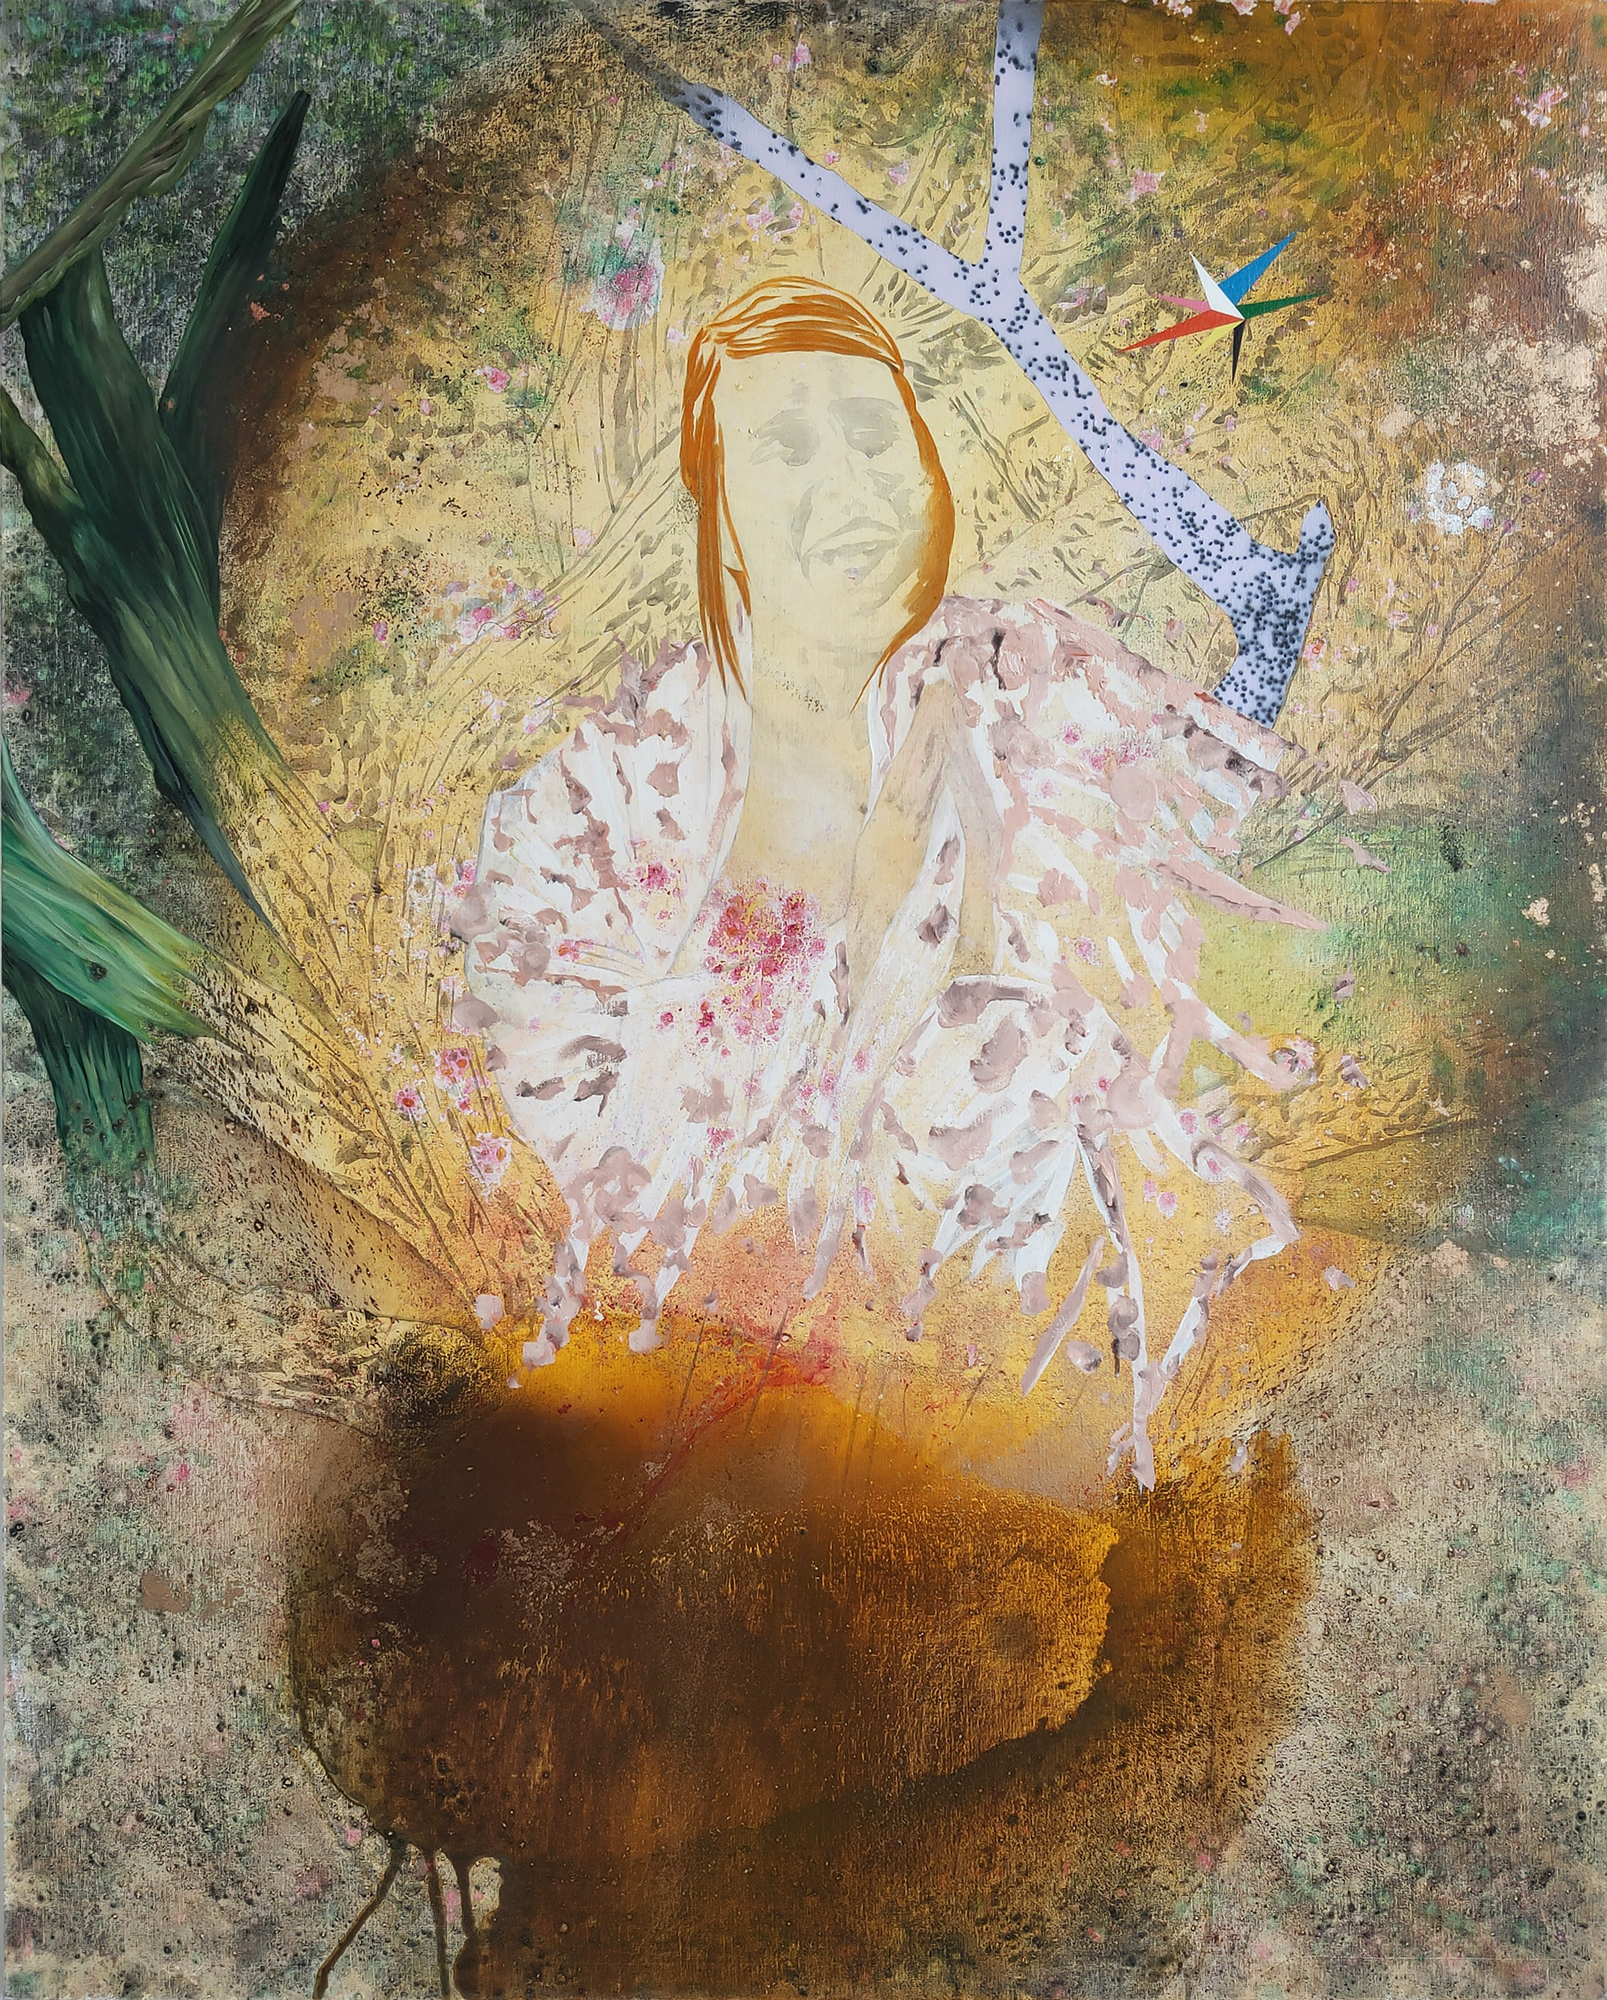 Brusque métamorphose en femme mariée, Marc Molk, 2019, huile et acrylique sur toile, 162 x 130 cm